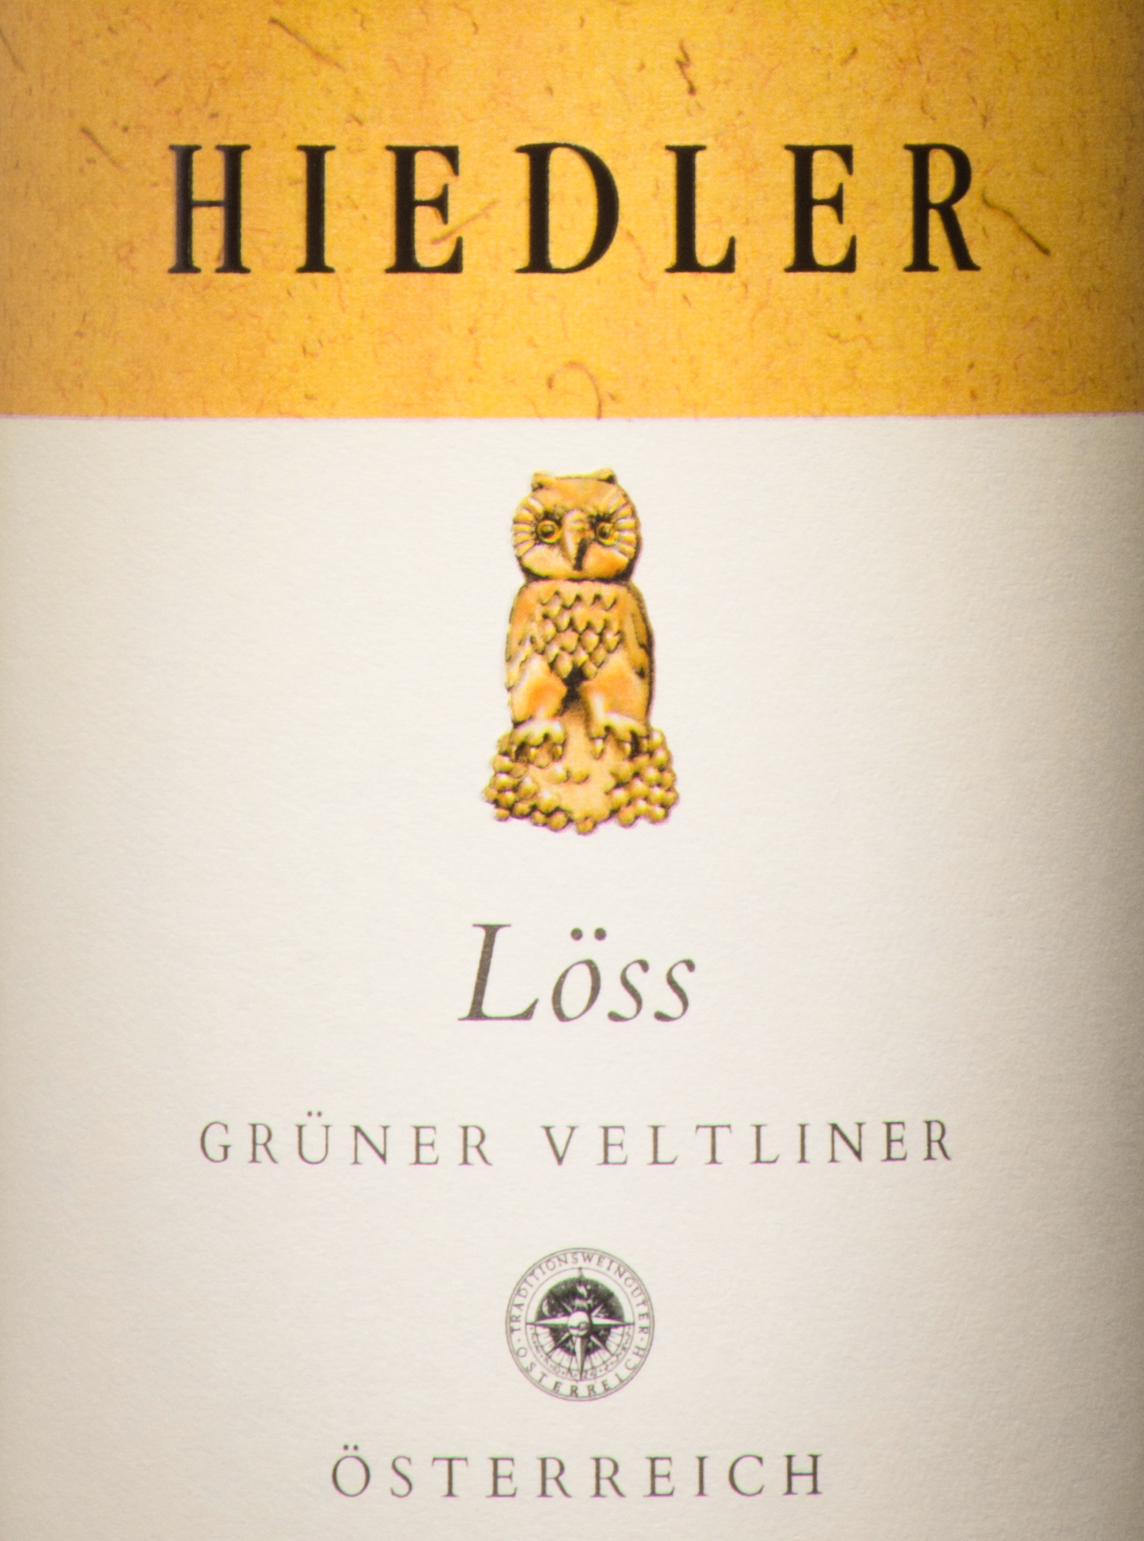 L. Hiedler 'Loess' Kamptal DAC Grüner Veltliner - Skurnik Wines & Spirits